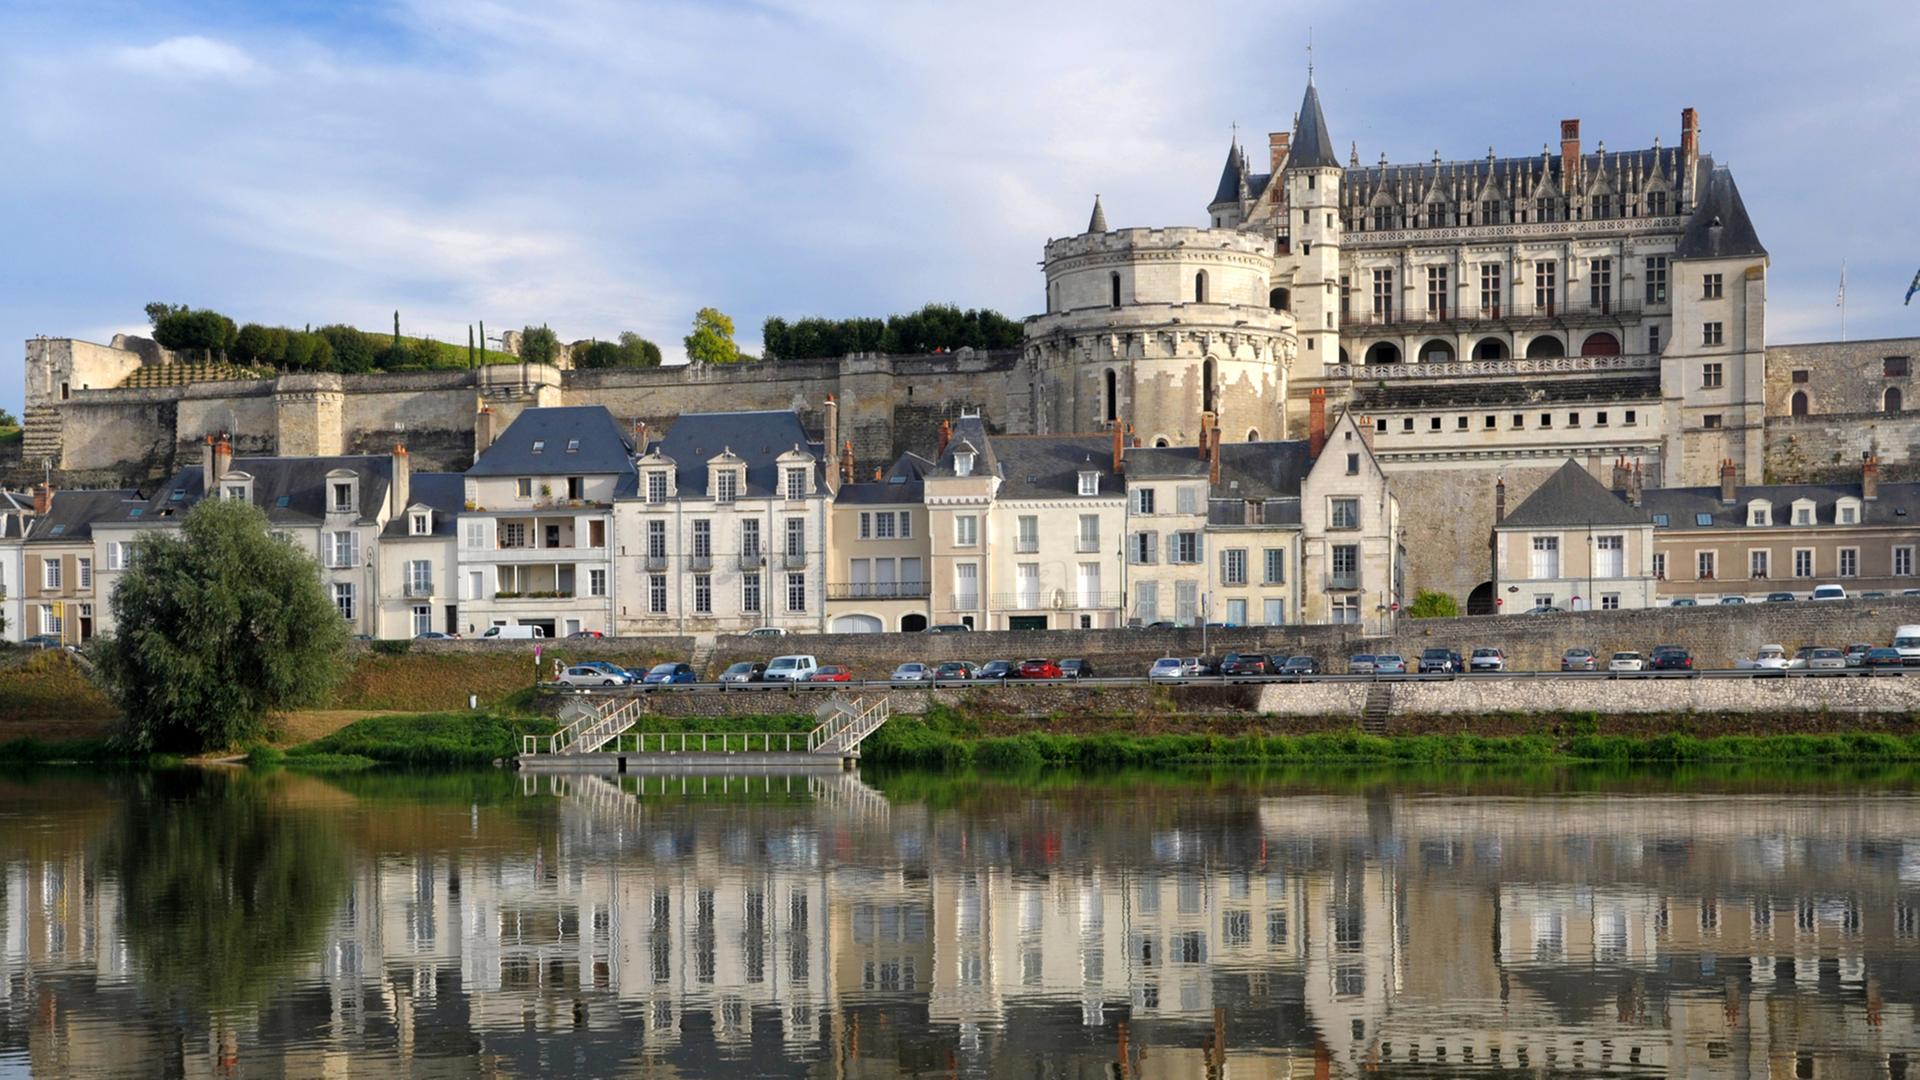 Hoch über dem Ufer der Loire erheben sich die Reste des Königsschlosses von Ambroise.